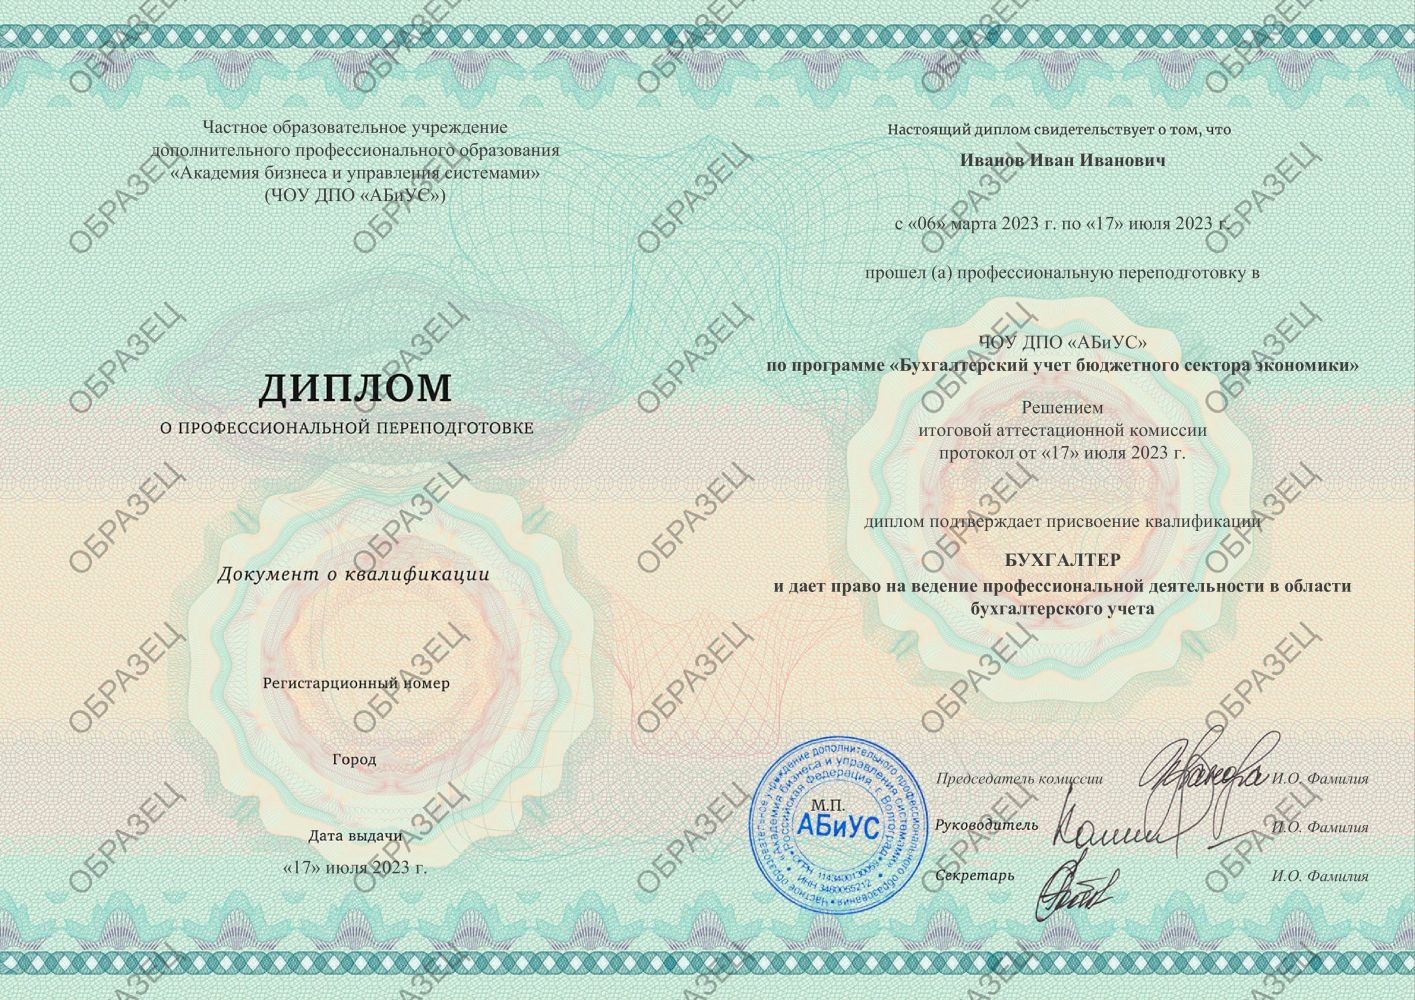 Диплом Бухгалтерский учет бюджетного сектора экономики 510 часов 21438 руб.